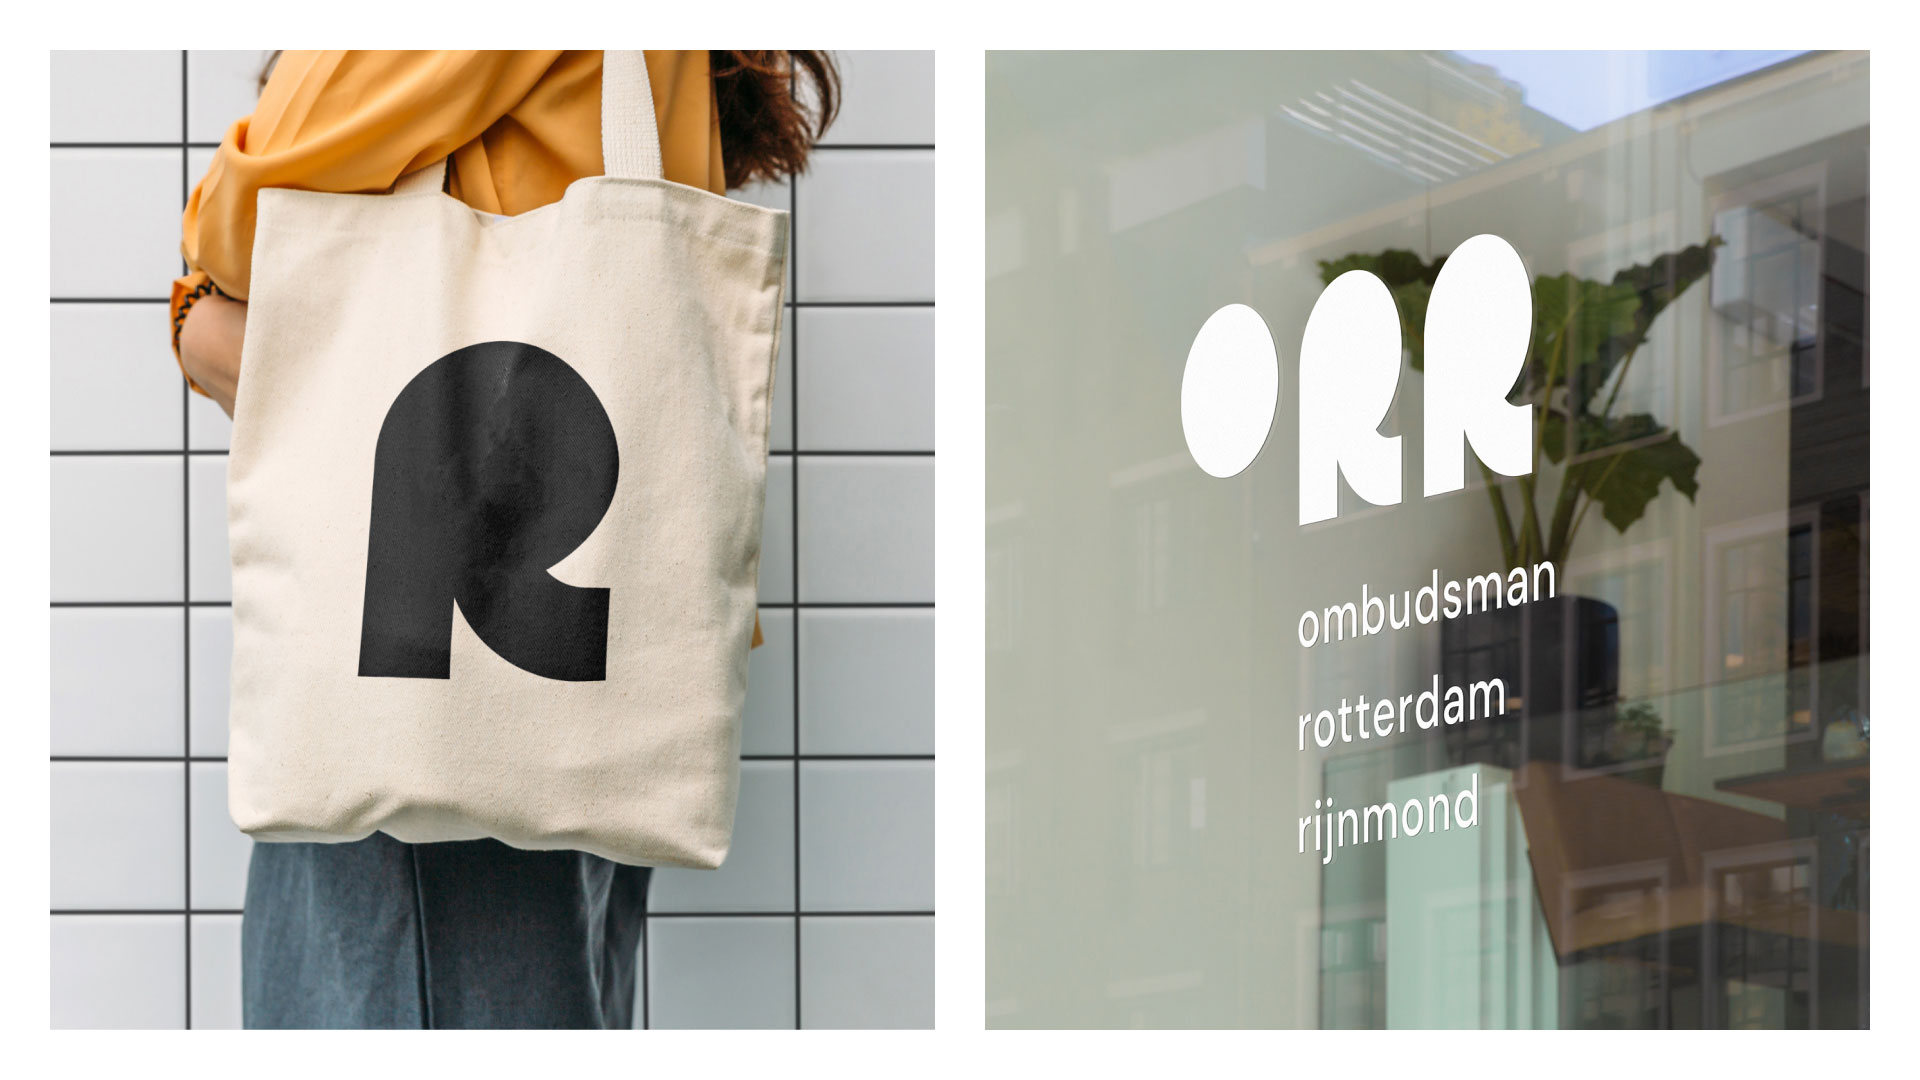 Ombudsman Rotterdam Rijnmond rebranding